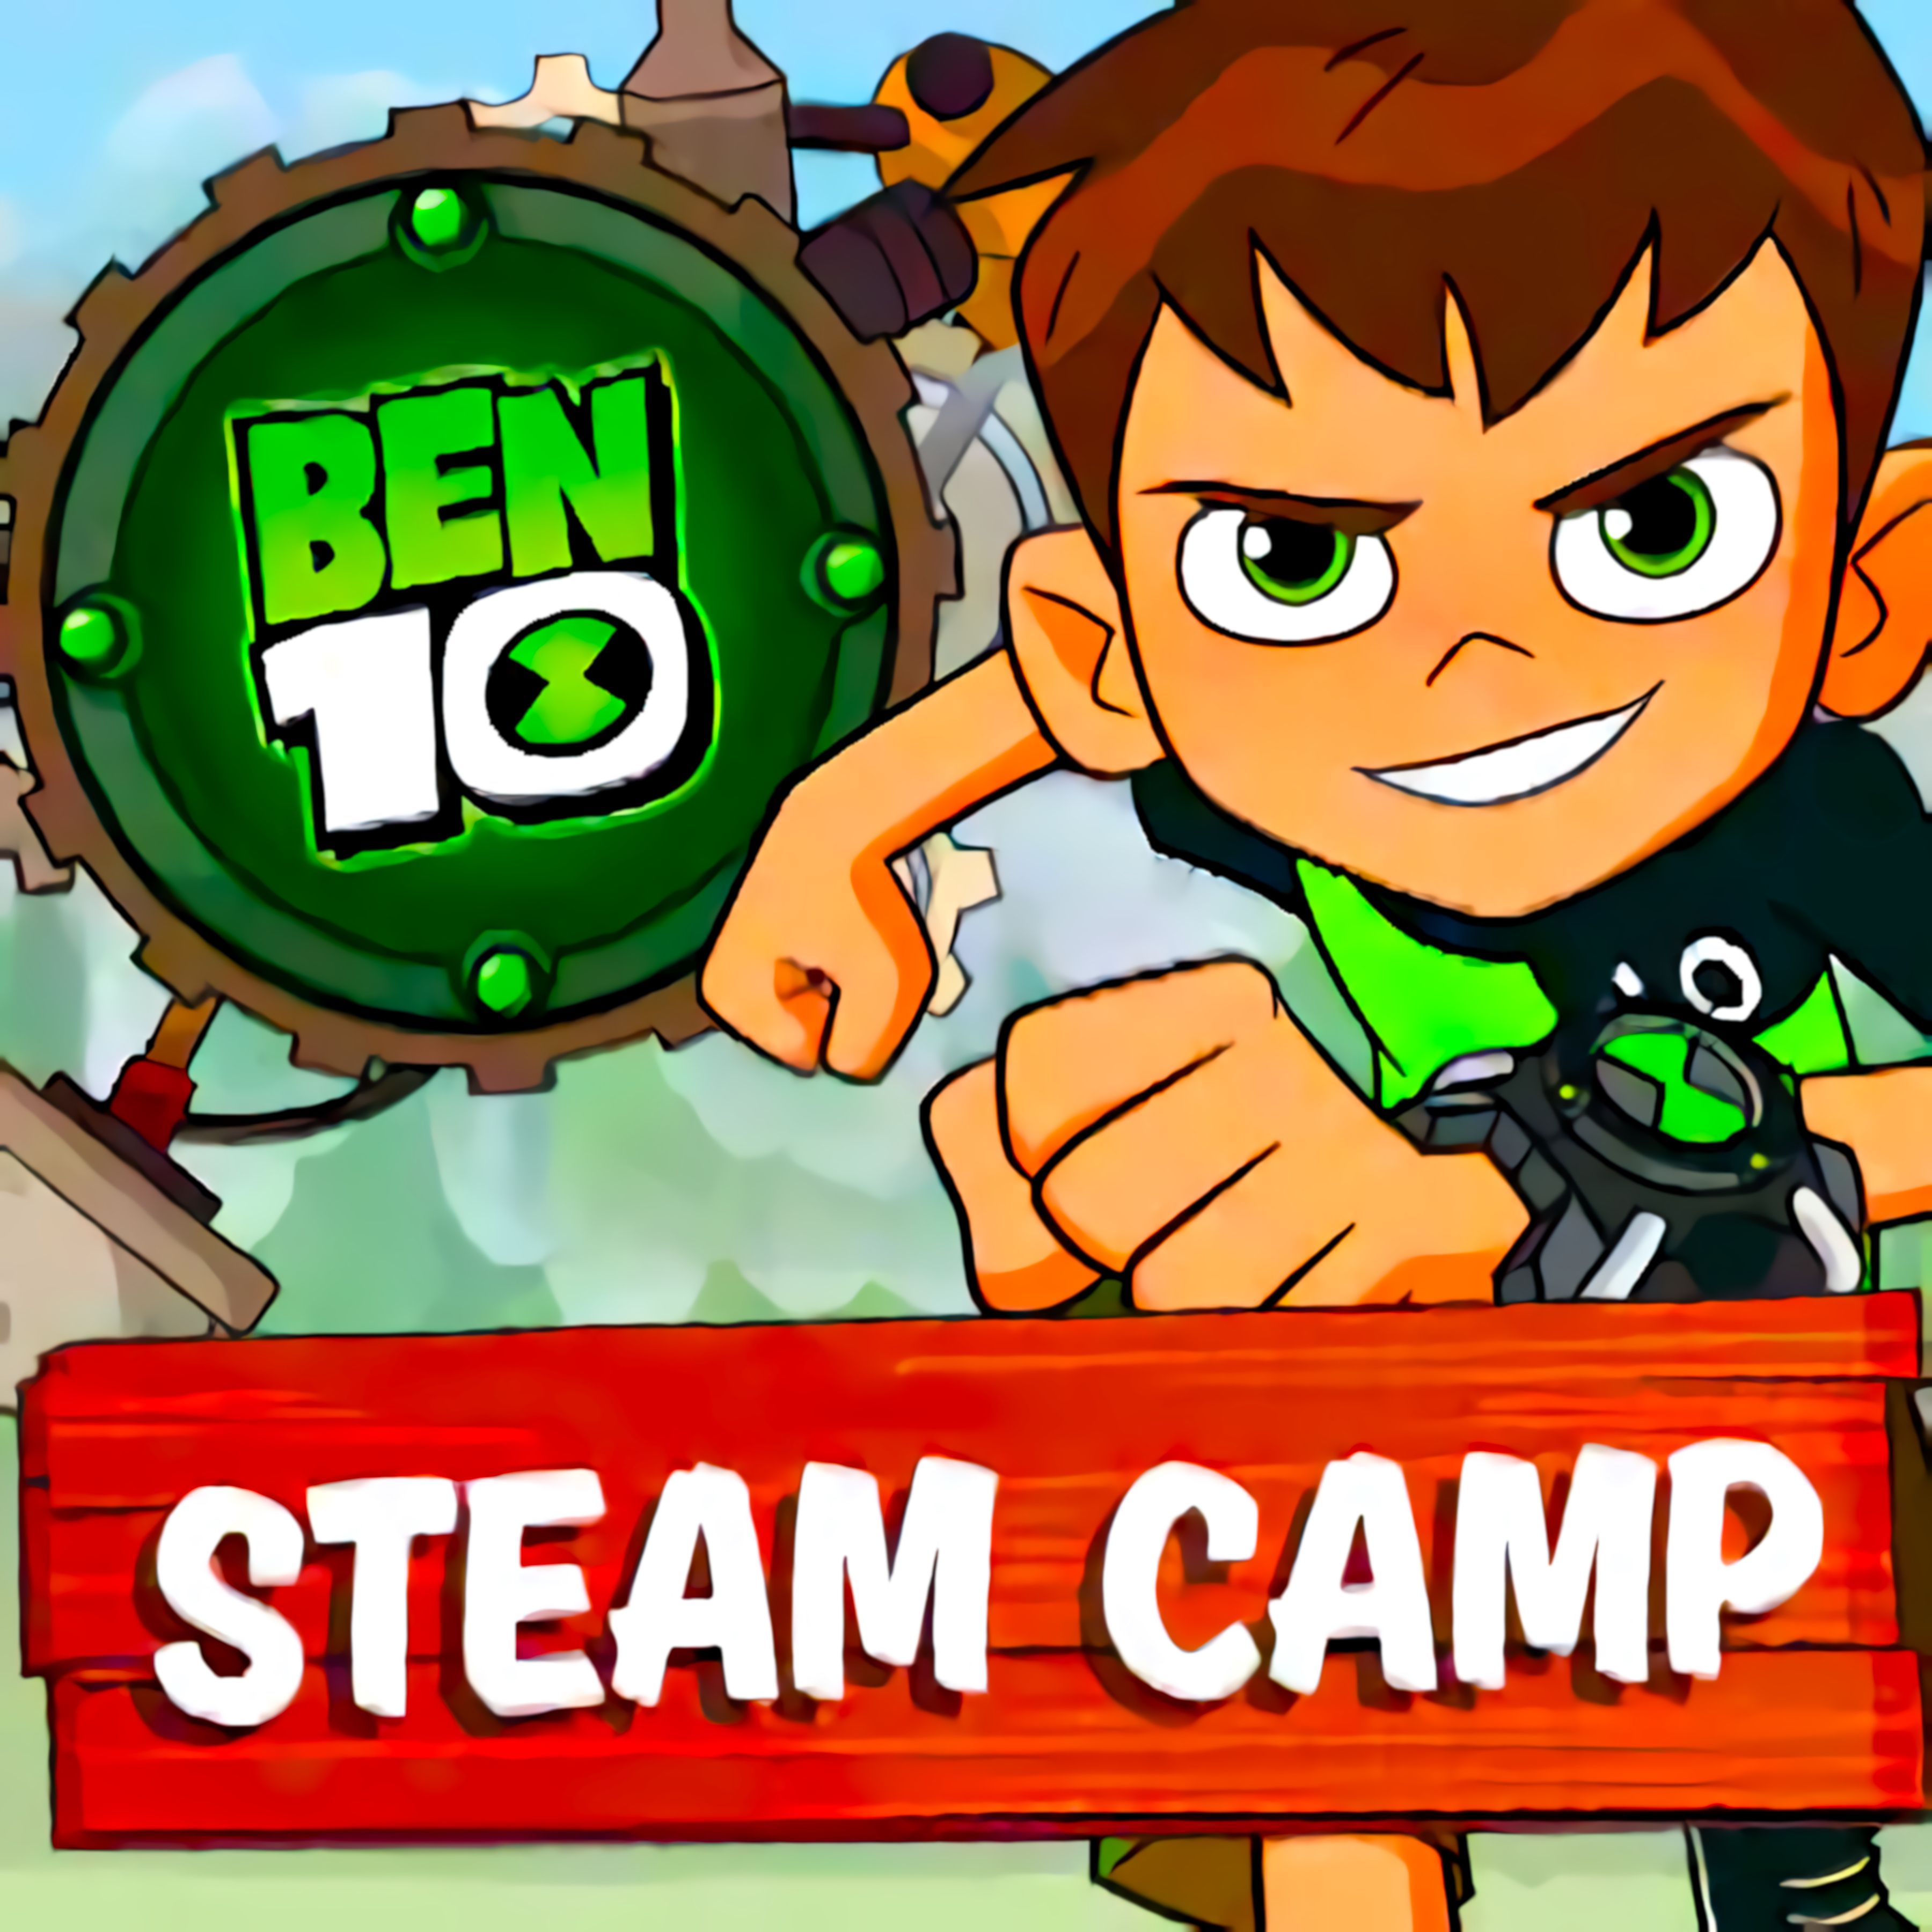 Steam Camp - Ben 10